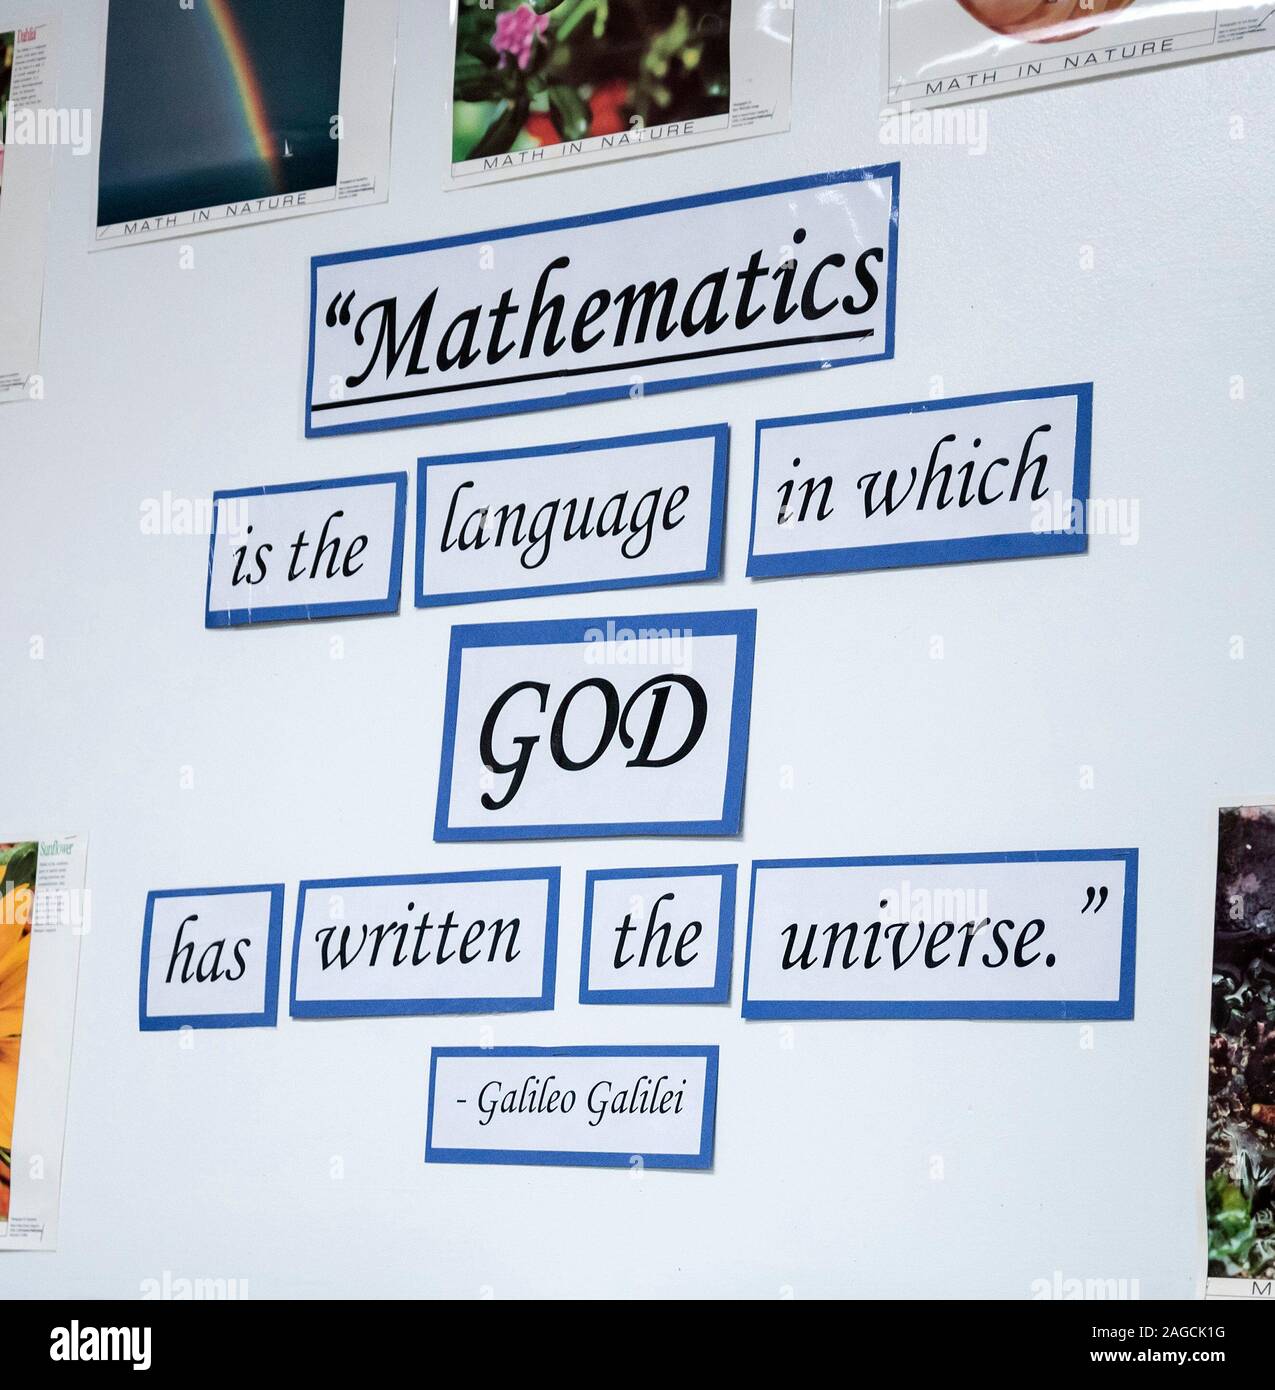 Inscrivez-vous publié dans classe de mathématiques, 'Mathématiques est la langue dans laquelle Dieu a écrit l'univers.', attribué à Galilée. Banque D'Images